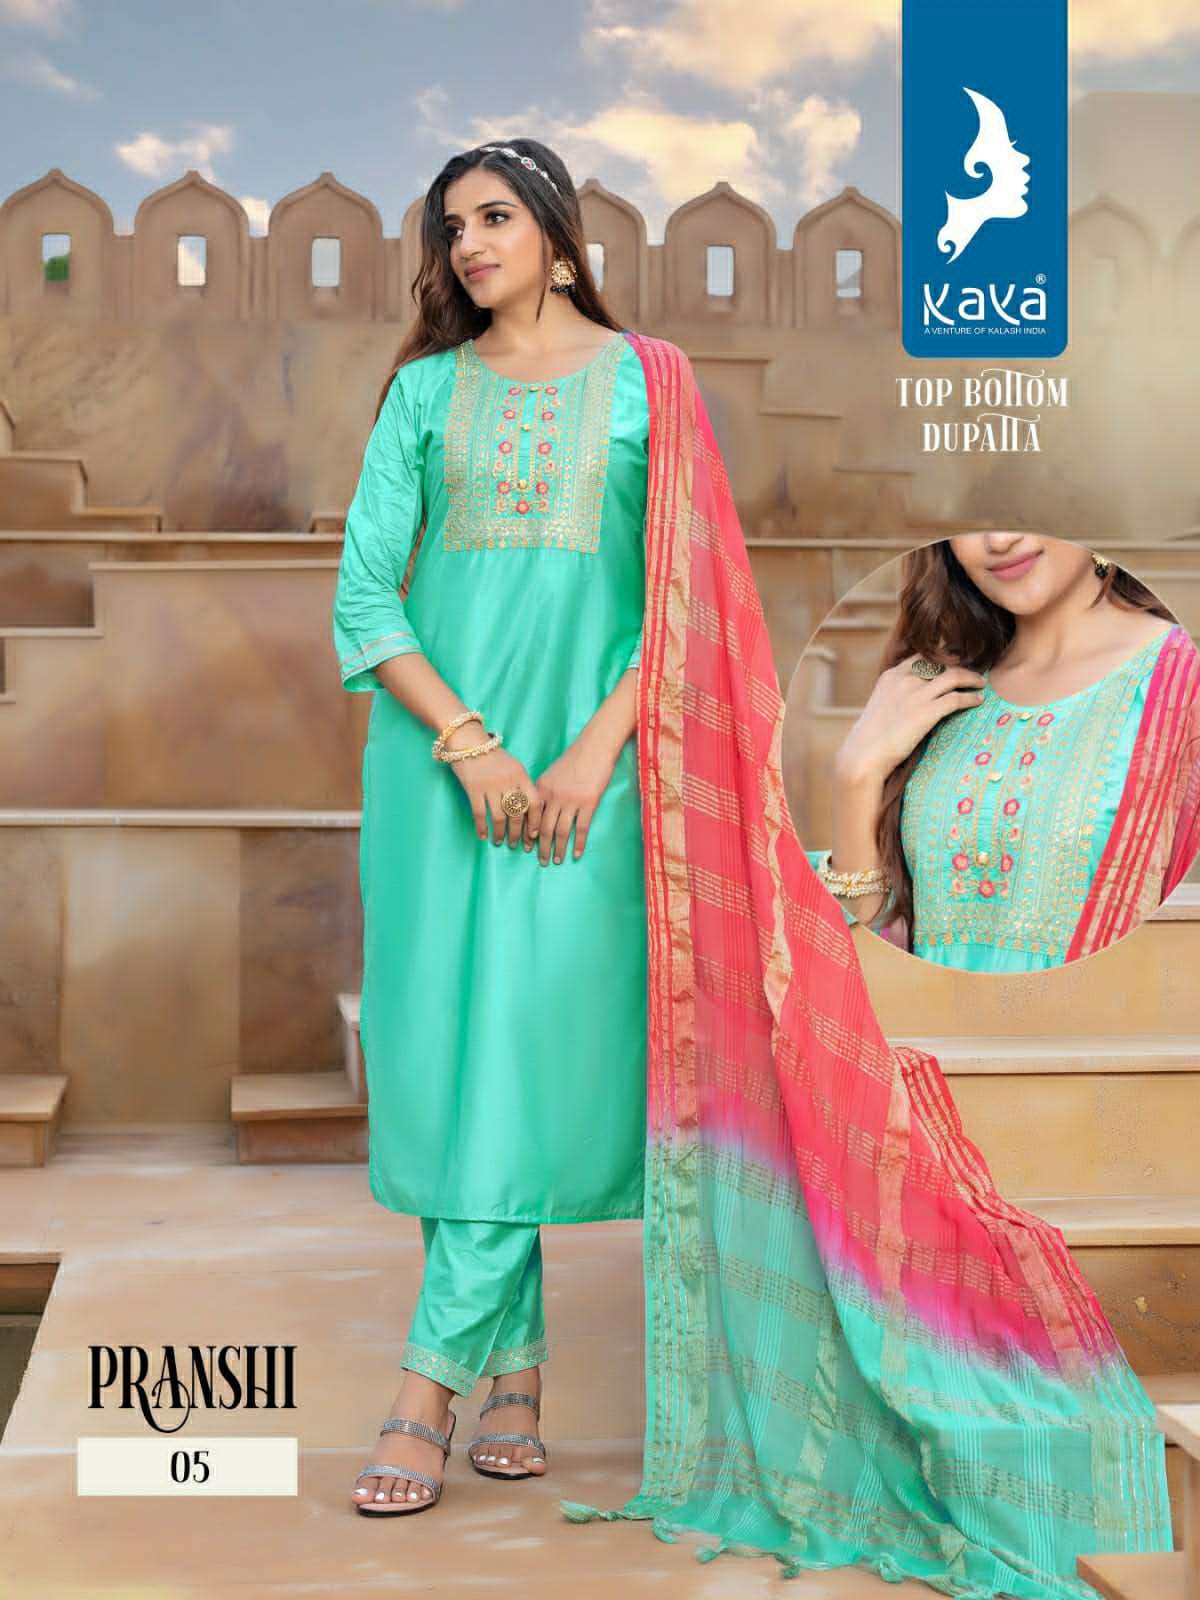 kaya kurti pranshi 01-08 series designer kurti dupatta pant set at wholesale price surat gujarat